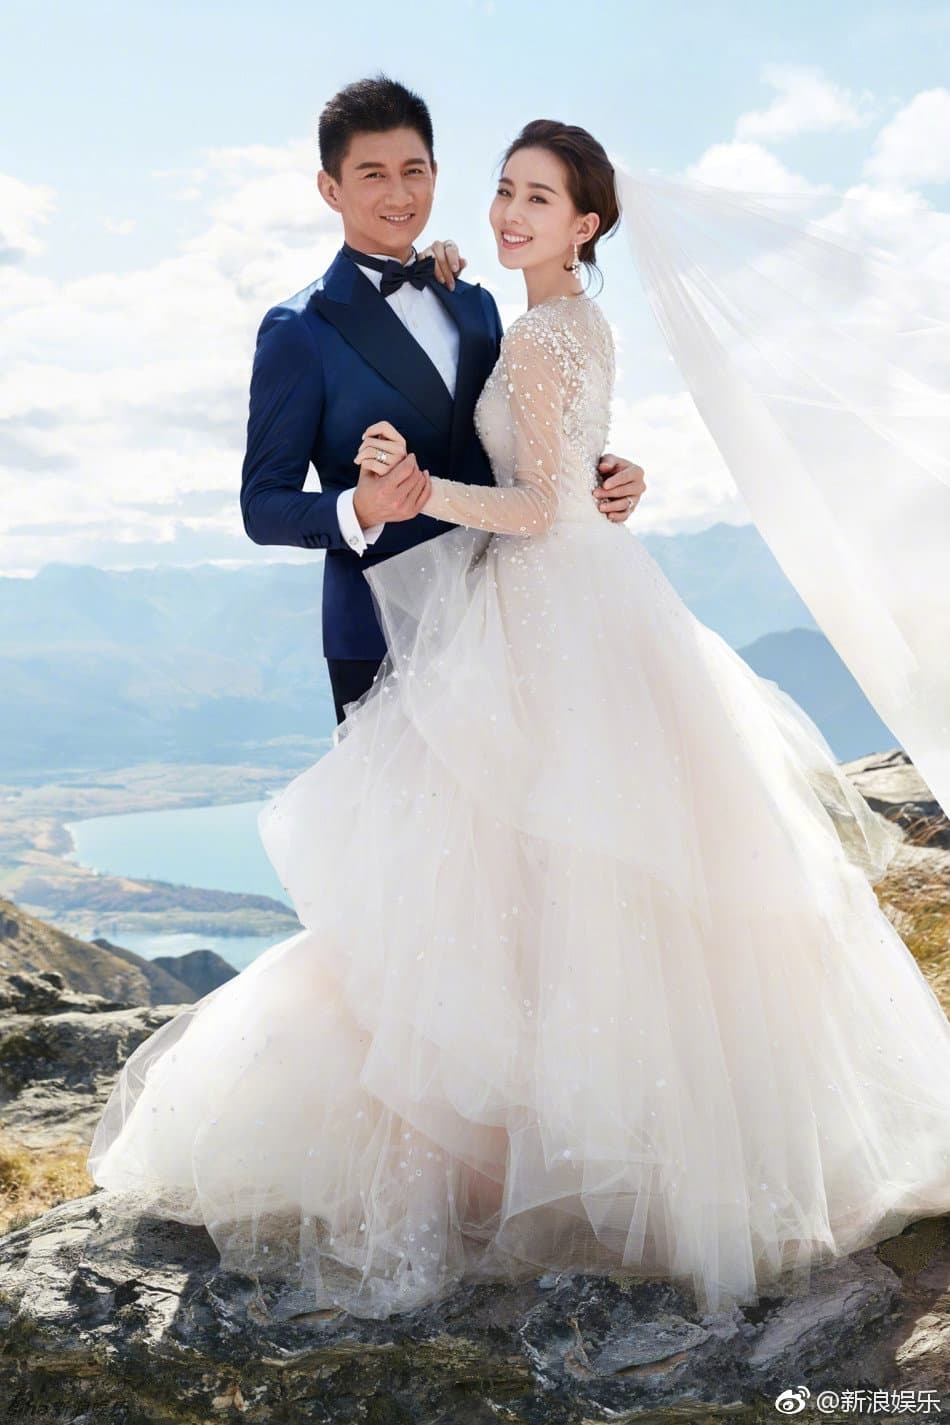  
Ảnh cưới của cặp đôi Bộ Bộ Kinh Tâm. (Ảnh: Weibo)